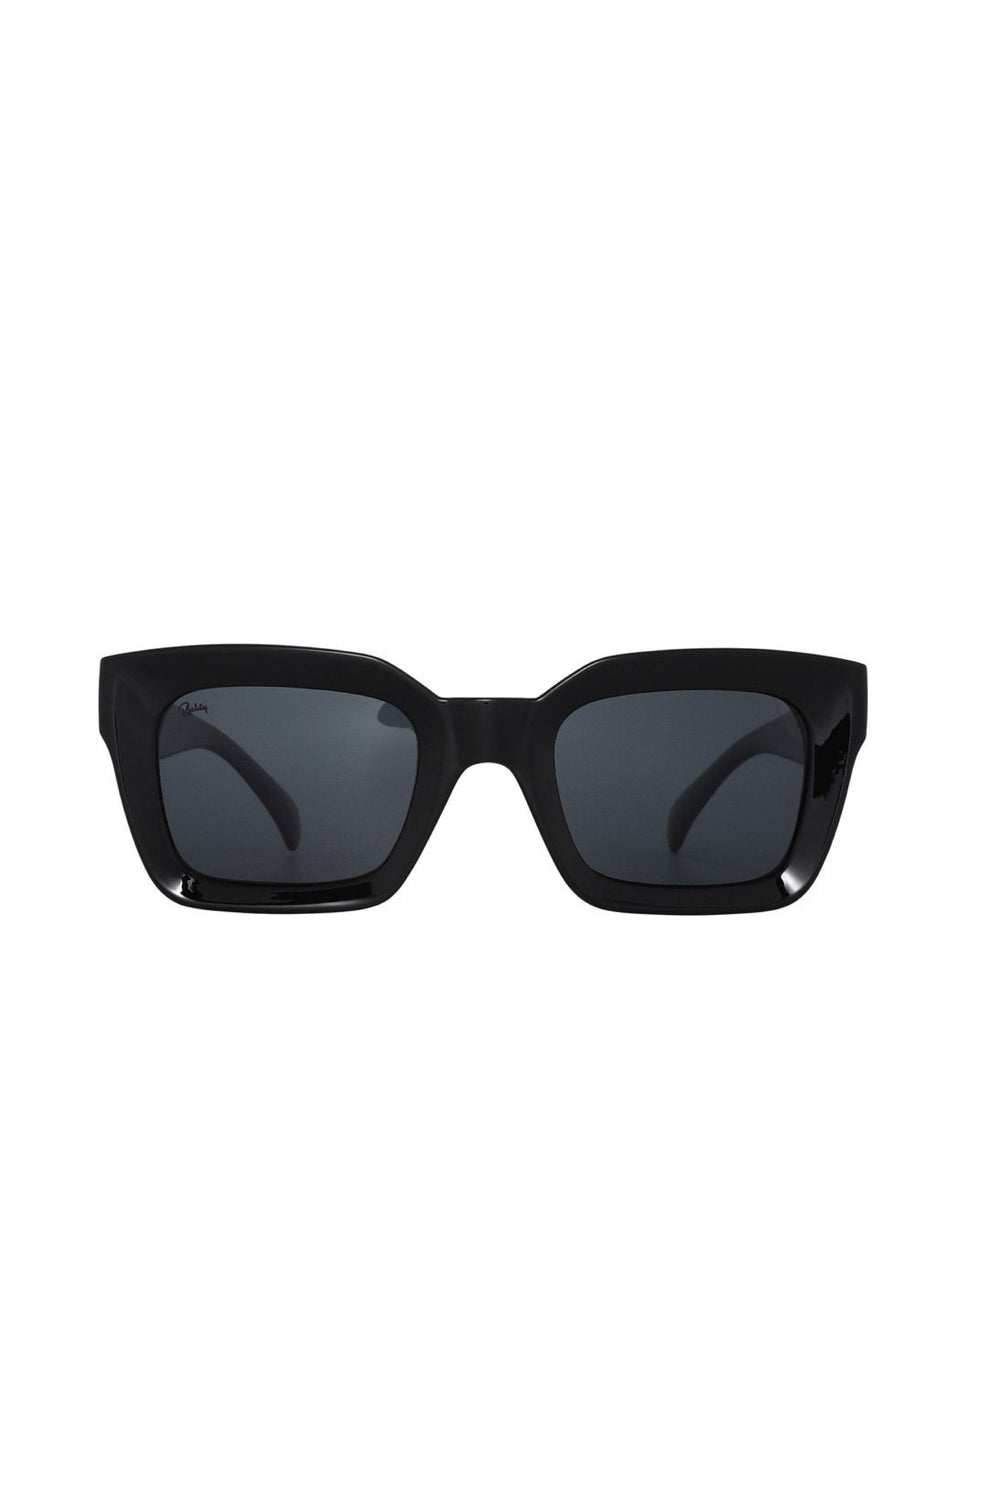 Black Onassis Sunglasses